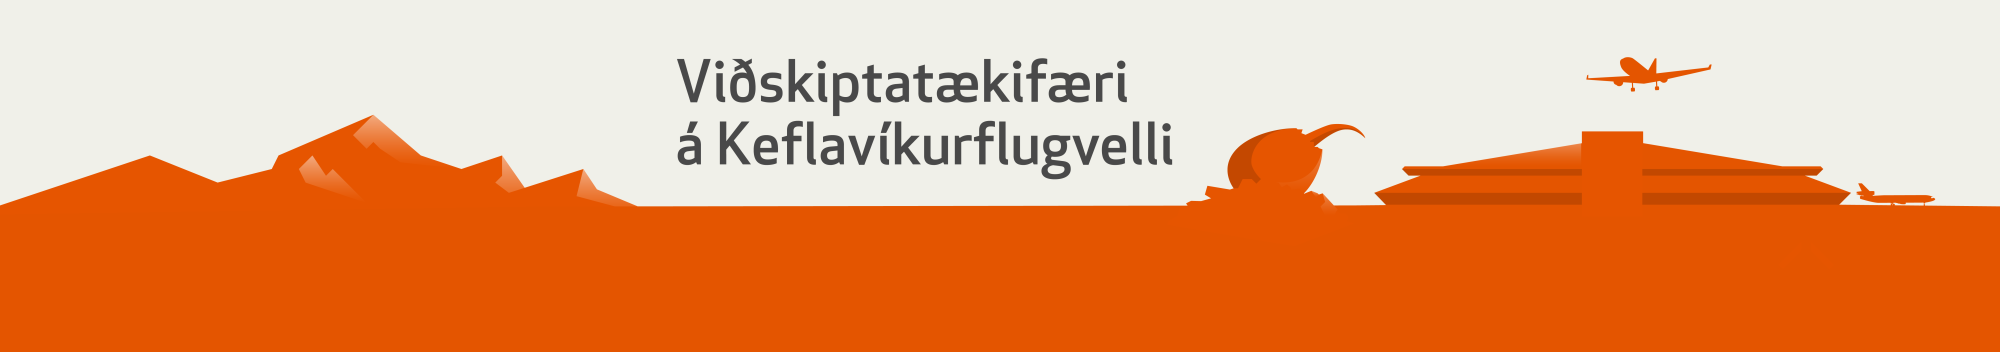 Viðskiptatækifæri á Keflavíkurflugvelli